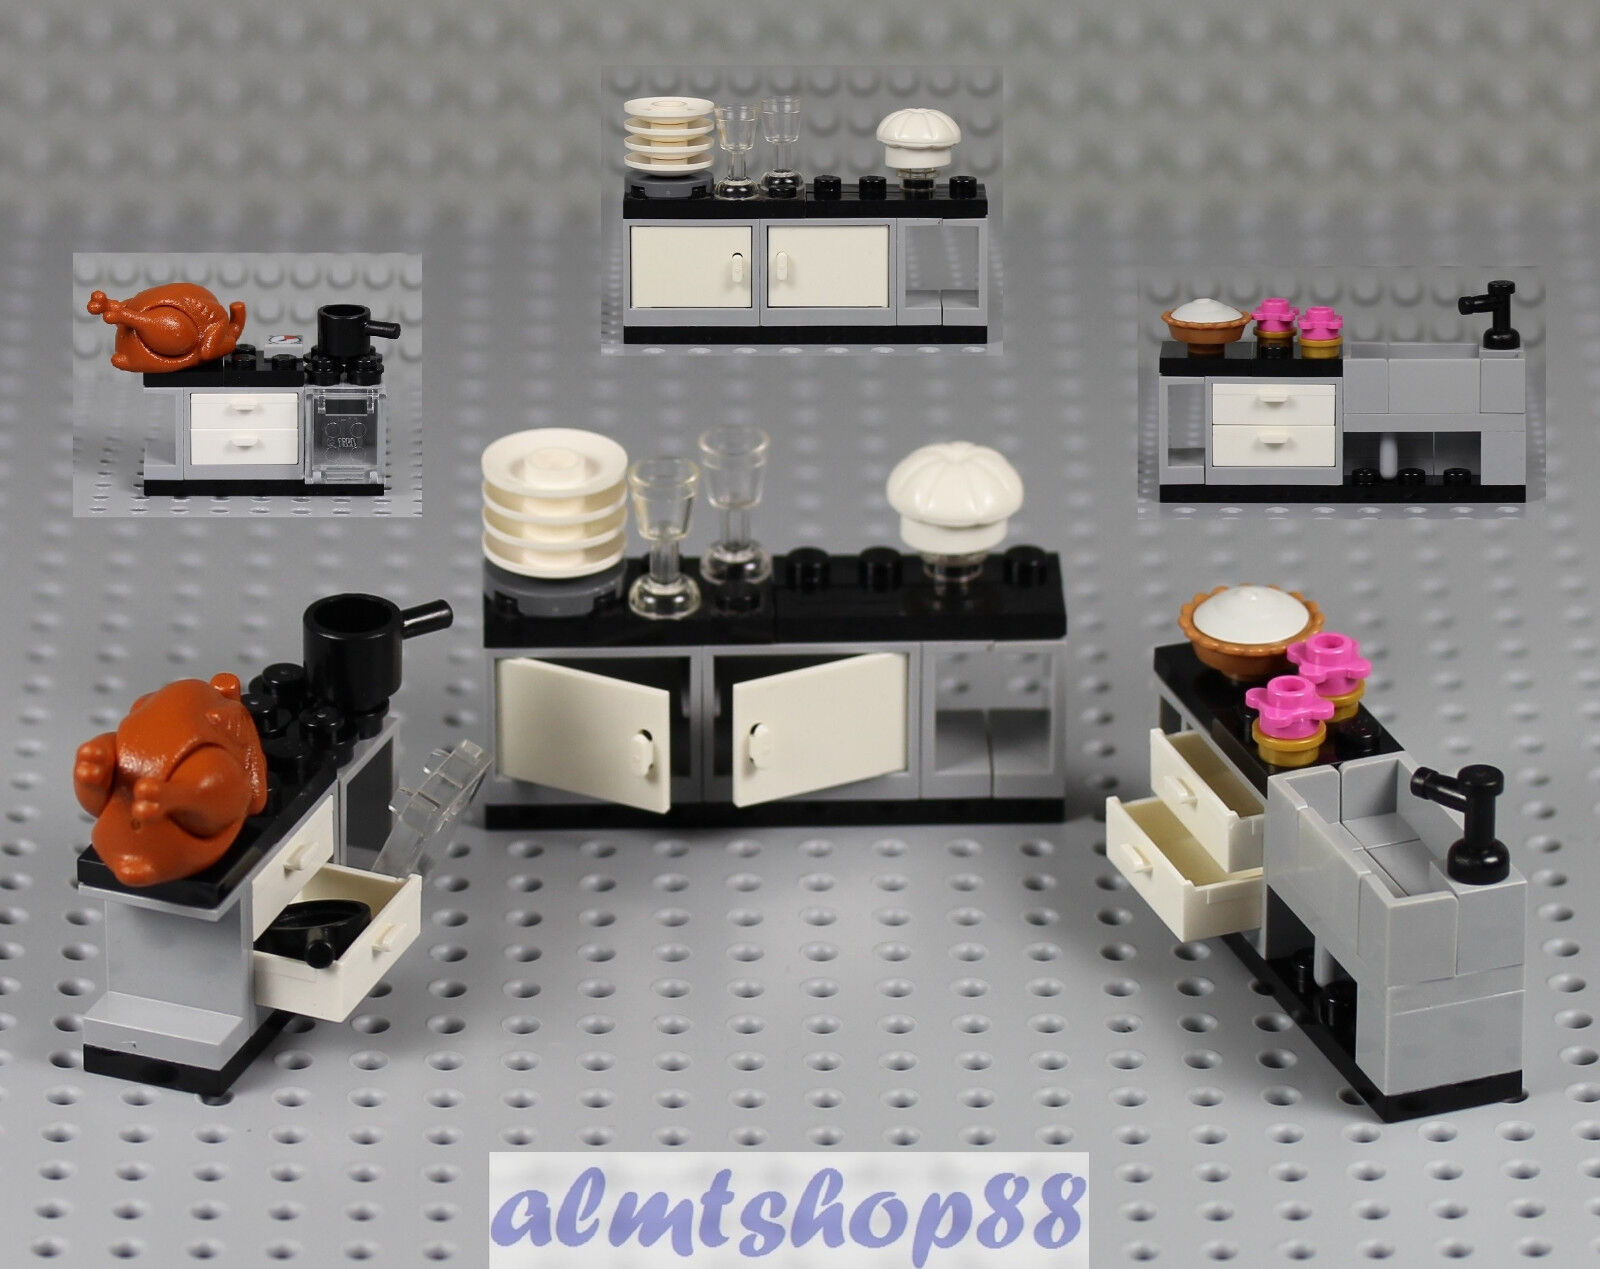 Bane Svække Mathis LEGO - 3 pcs Kitchen Appliance Oven Sink Cupboard Dishes Minifigure Food  10243 | eBay